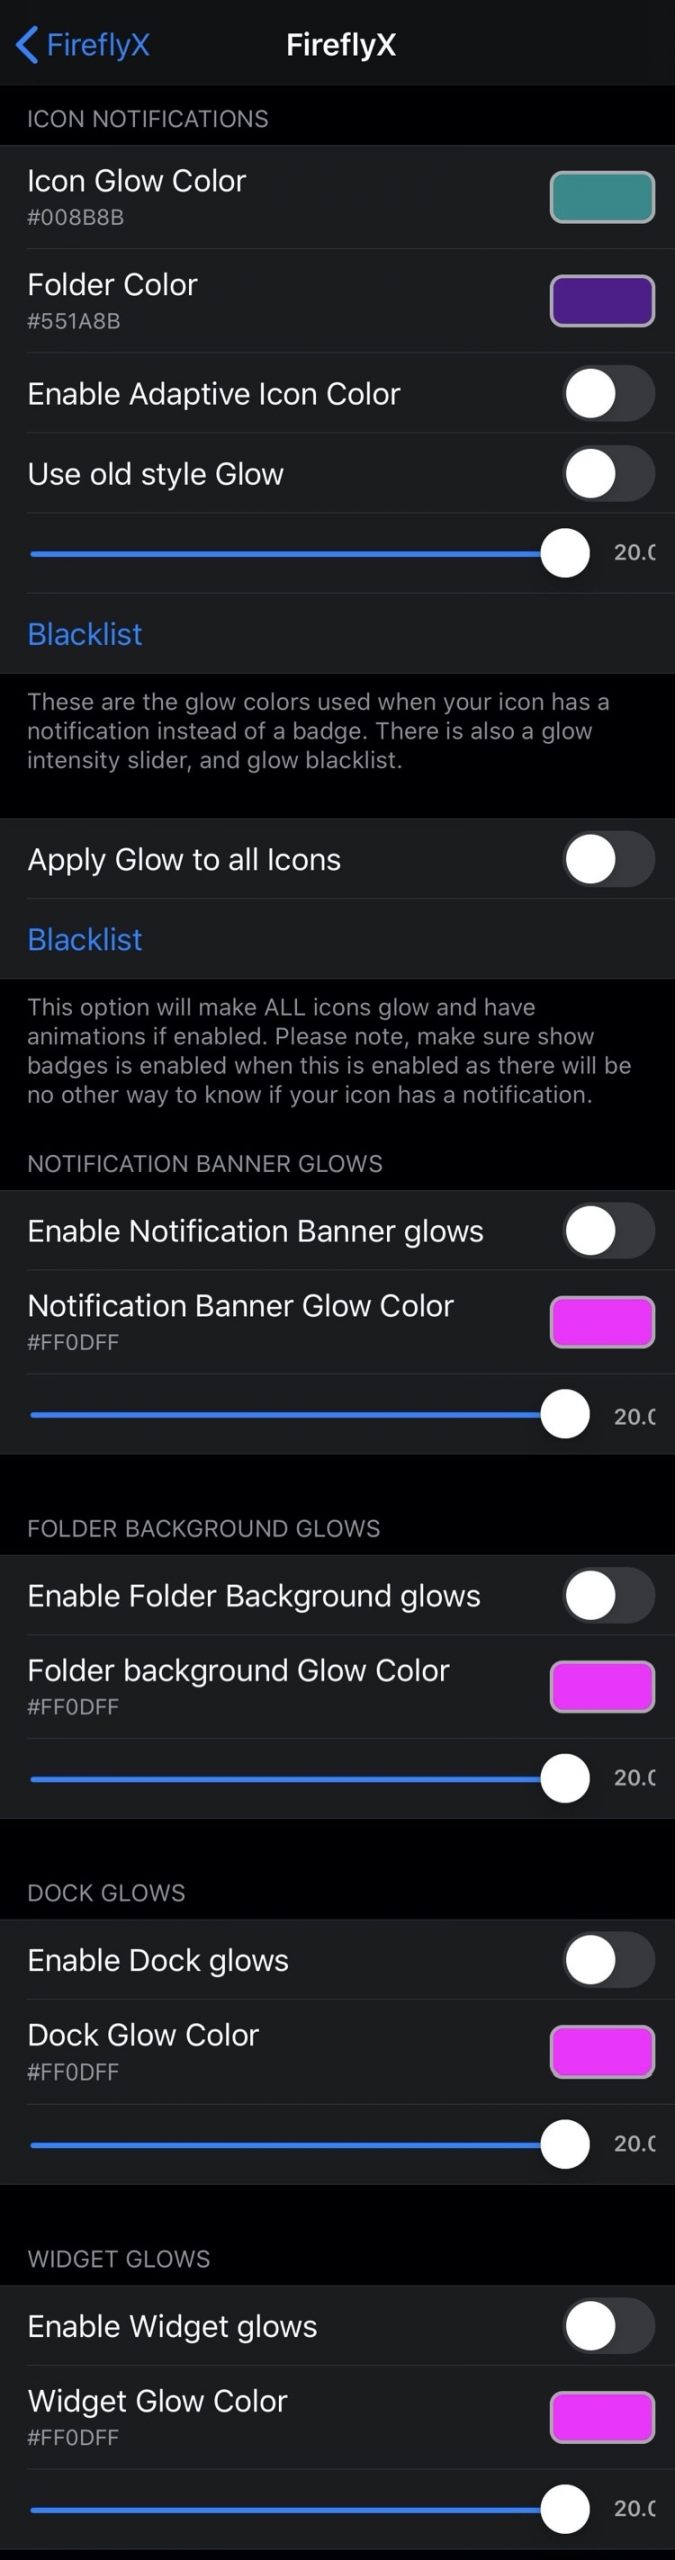 Mang đến cho iPhone của bạn tính thẩm mỹ độc đáo với FireflyX 5